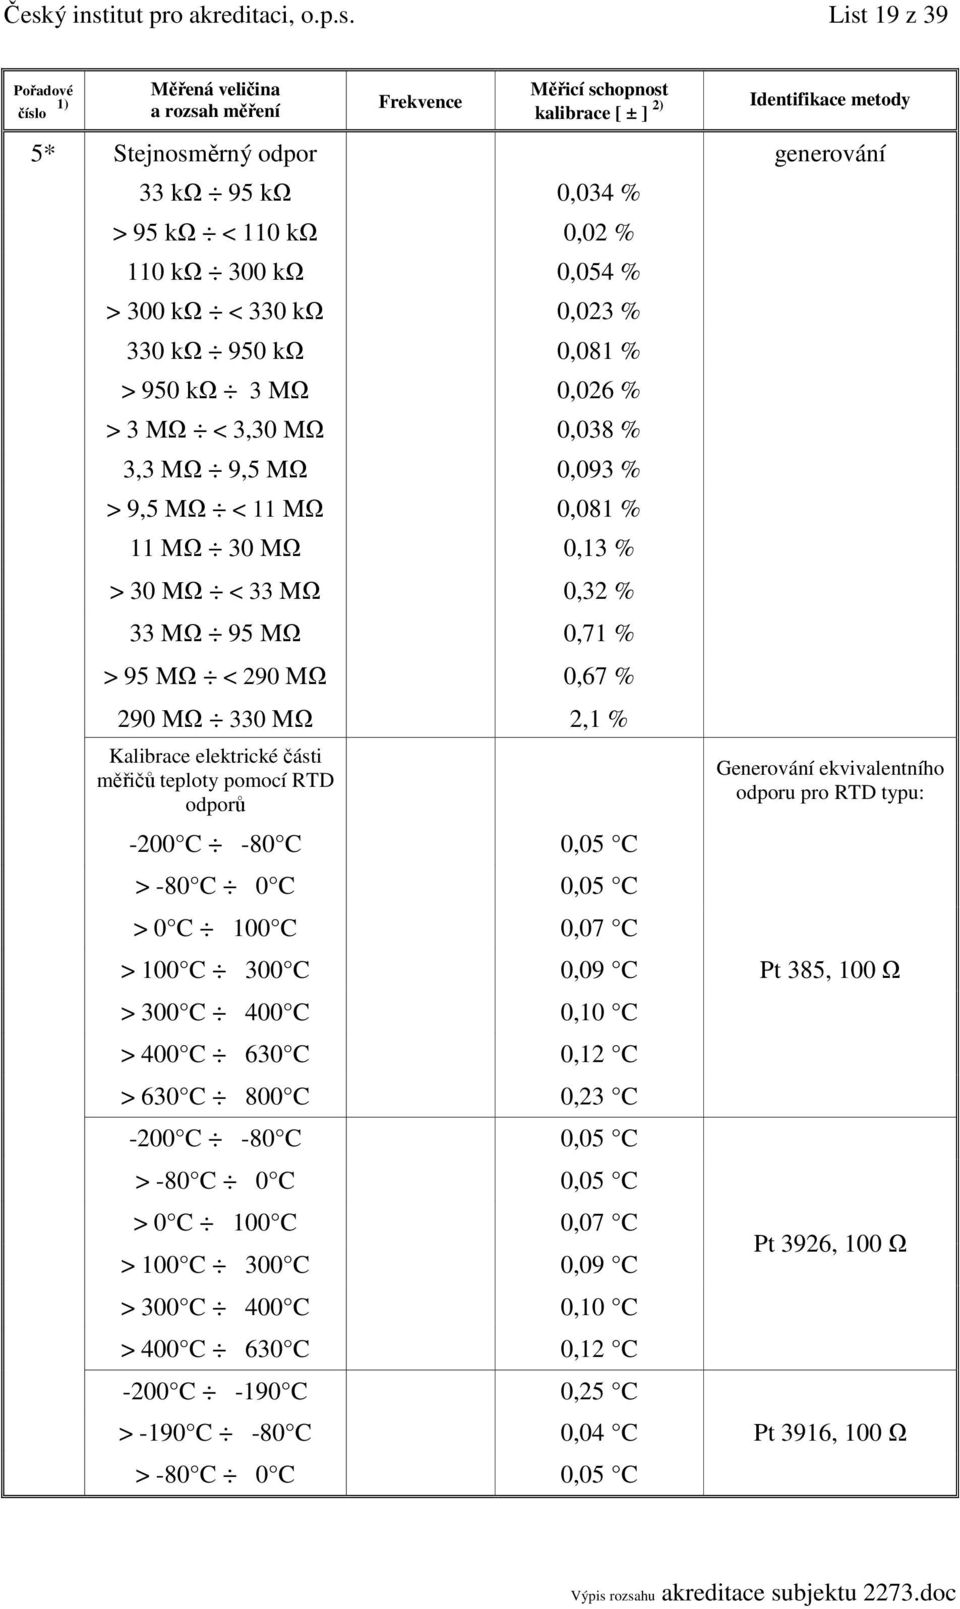 Kalibrace elektrické části měřičů teploty pomocí RTD odporů -200 C -80 C 0,05 C > -80 C 0 C 0,05 C > 0 C 100 C 0,07 C > 100 C 300 C 0,09 C > 300 C 400 C 0,10 C > 400 C 630 C 0,12 C > 630 C 800 C 0,23